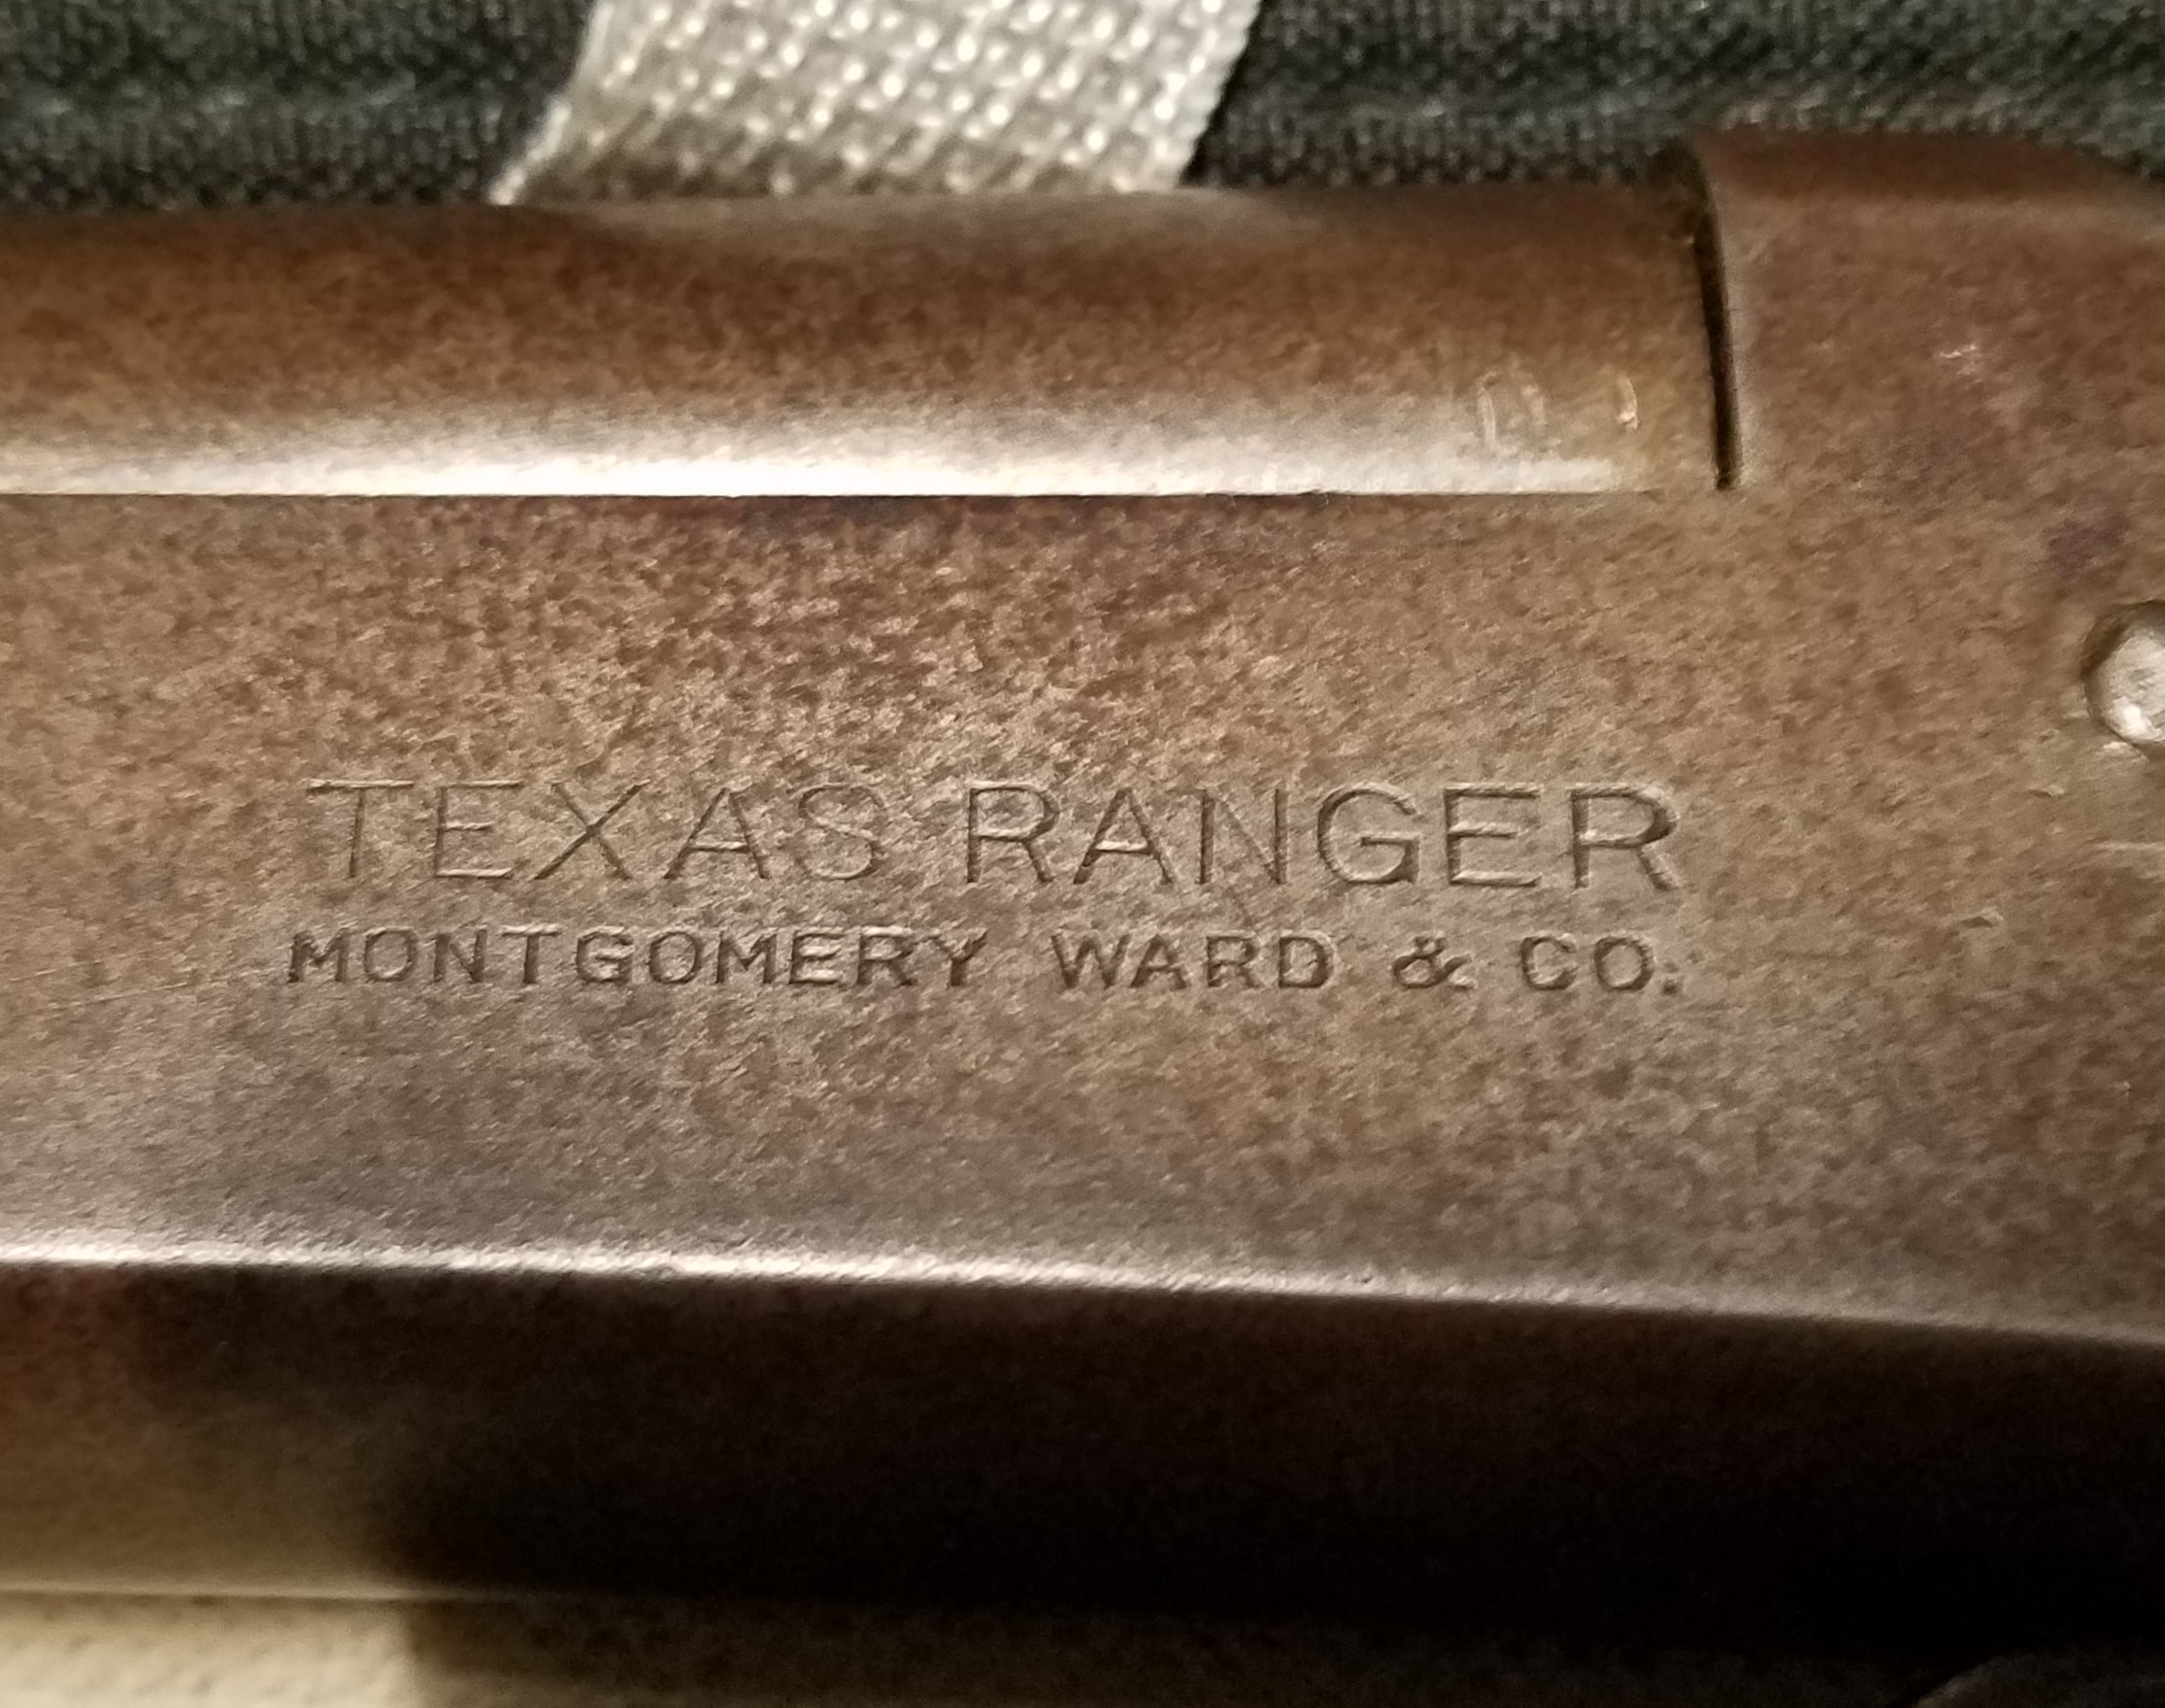 Wards Texas Ranger (2).jpg